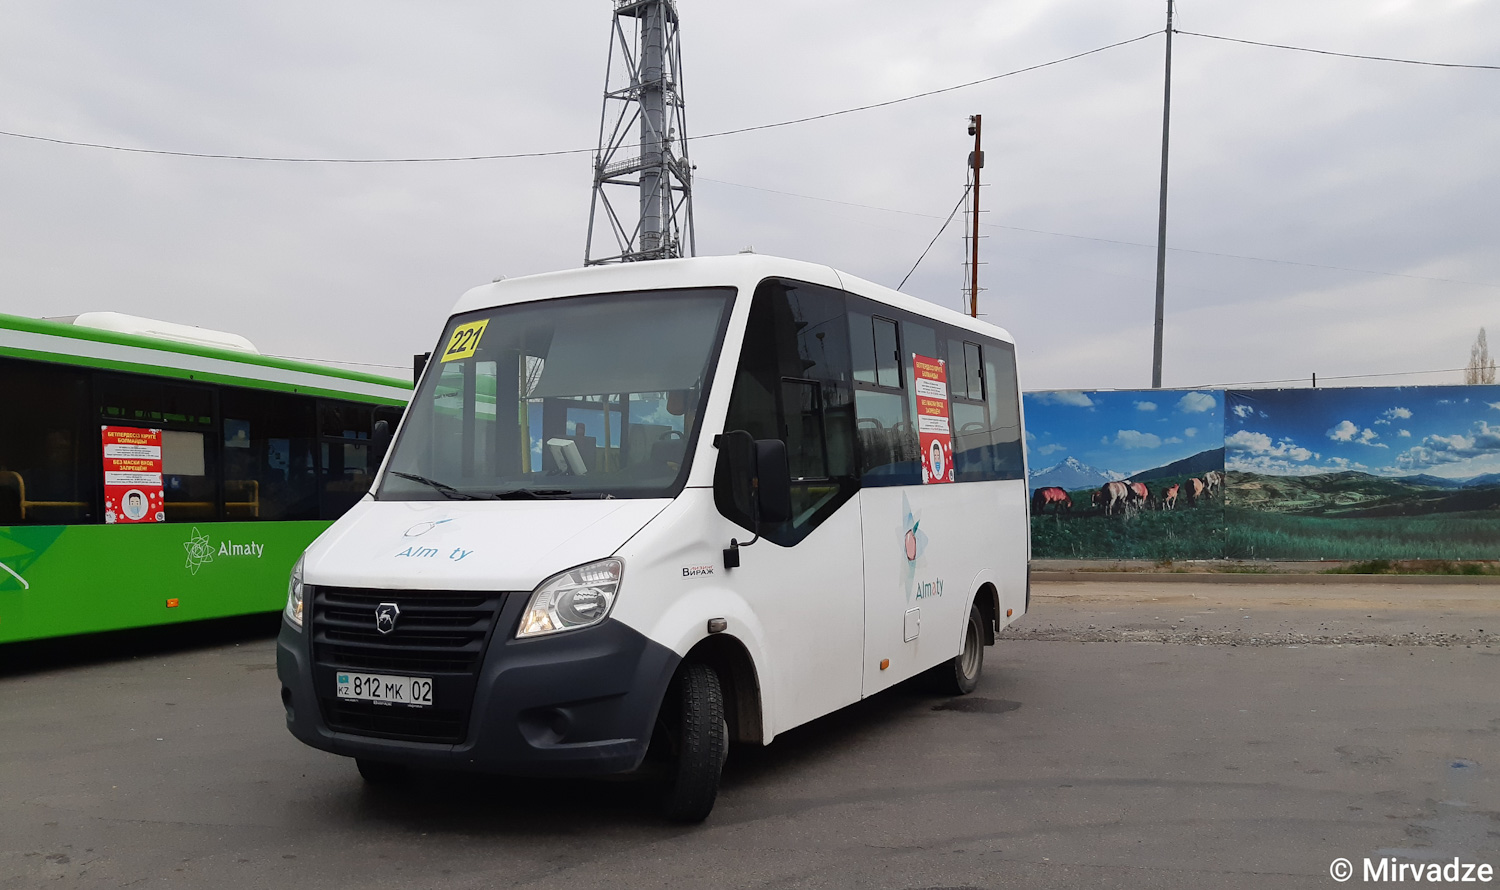 Almaty, ГАЗ-A64R42 Next № 812 MK 02